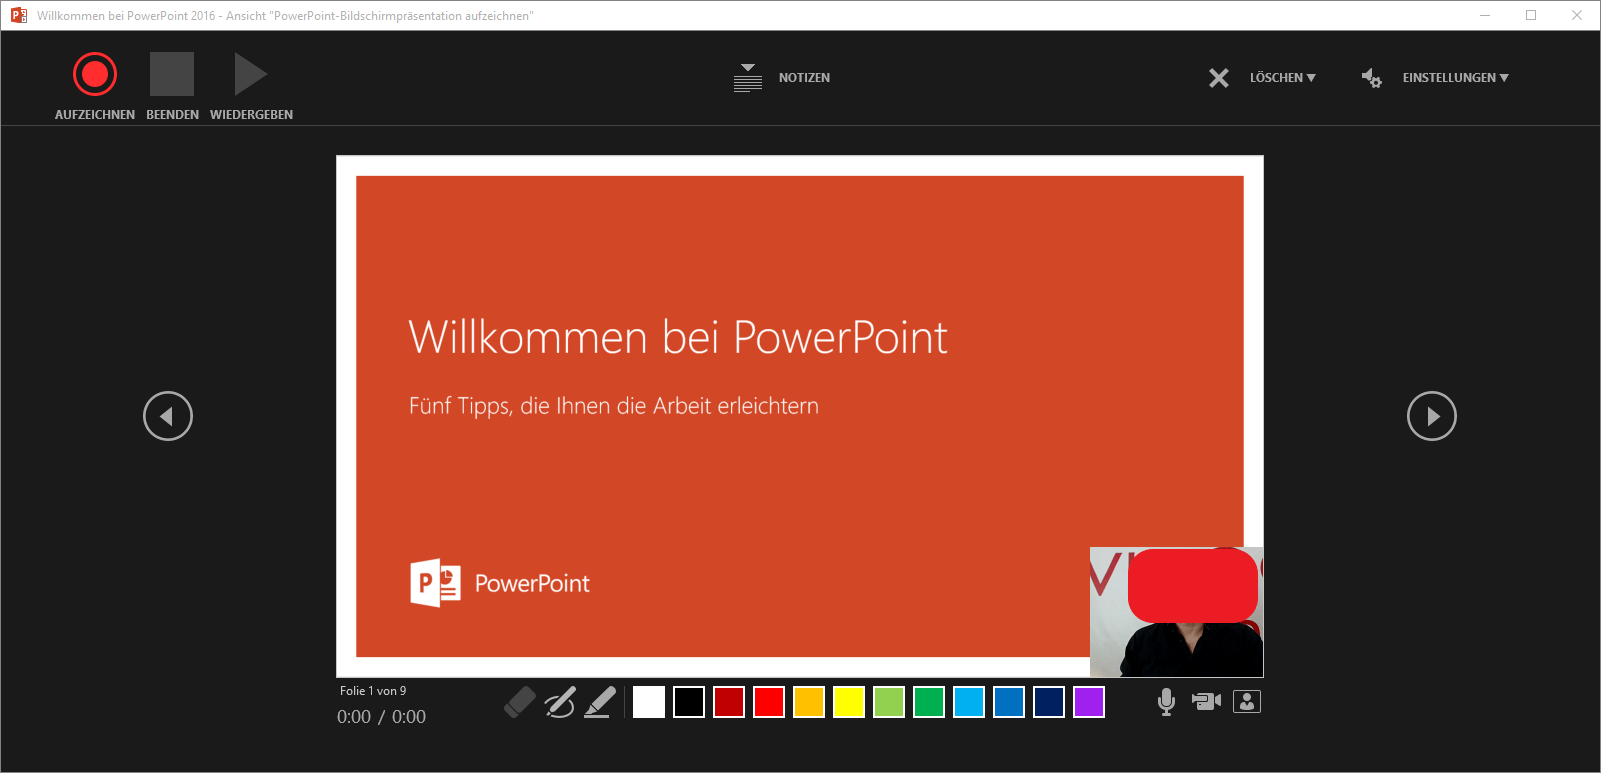 PowerPoint – Bildschirmpräsentation aufzeichnen